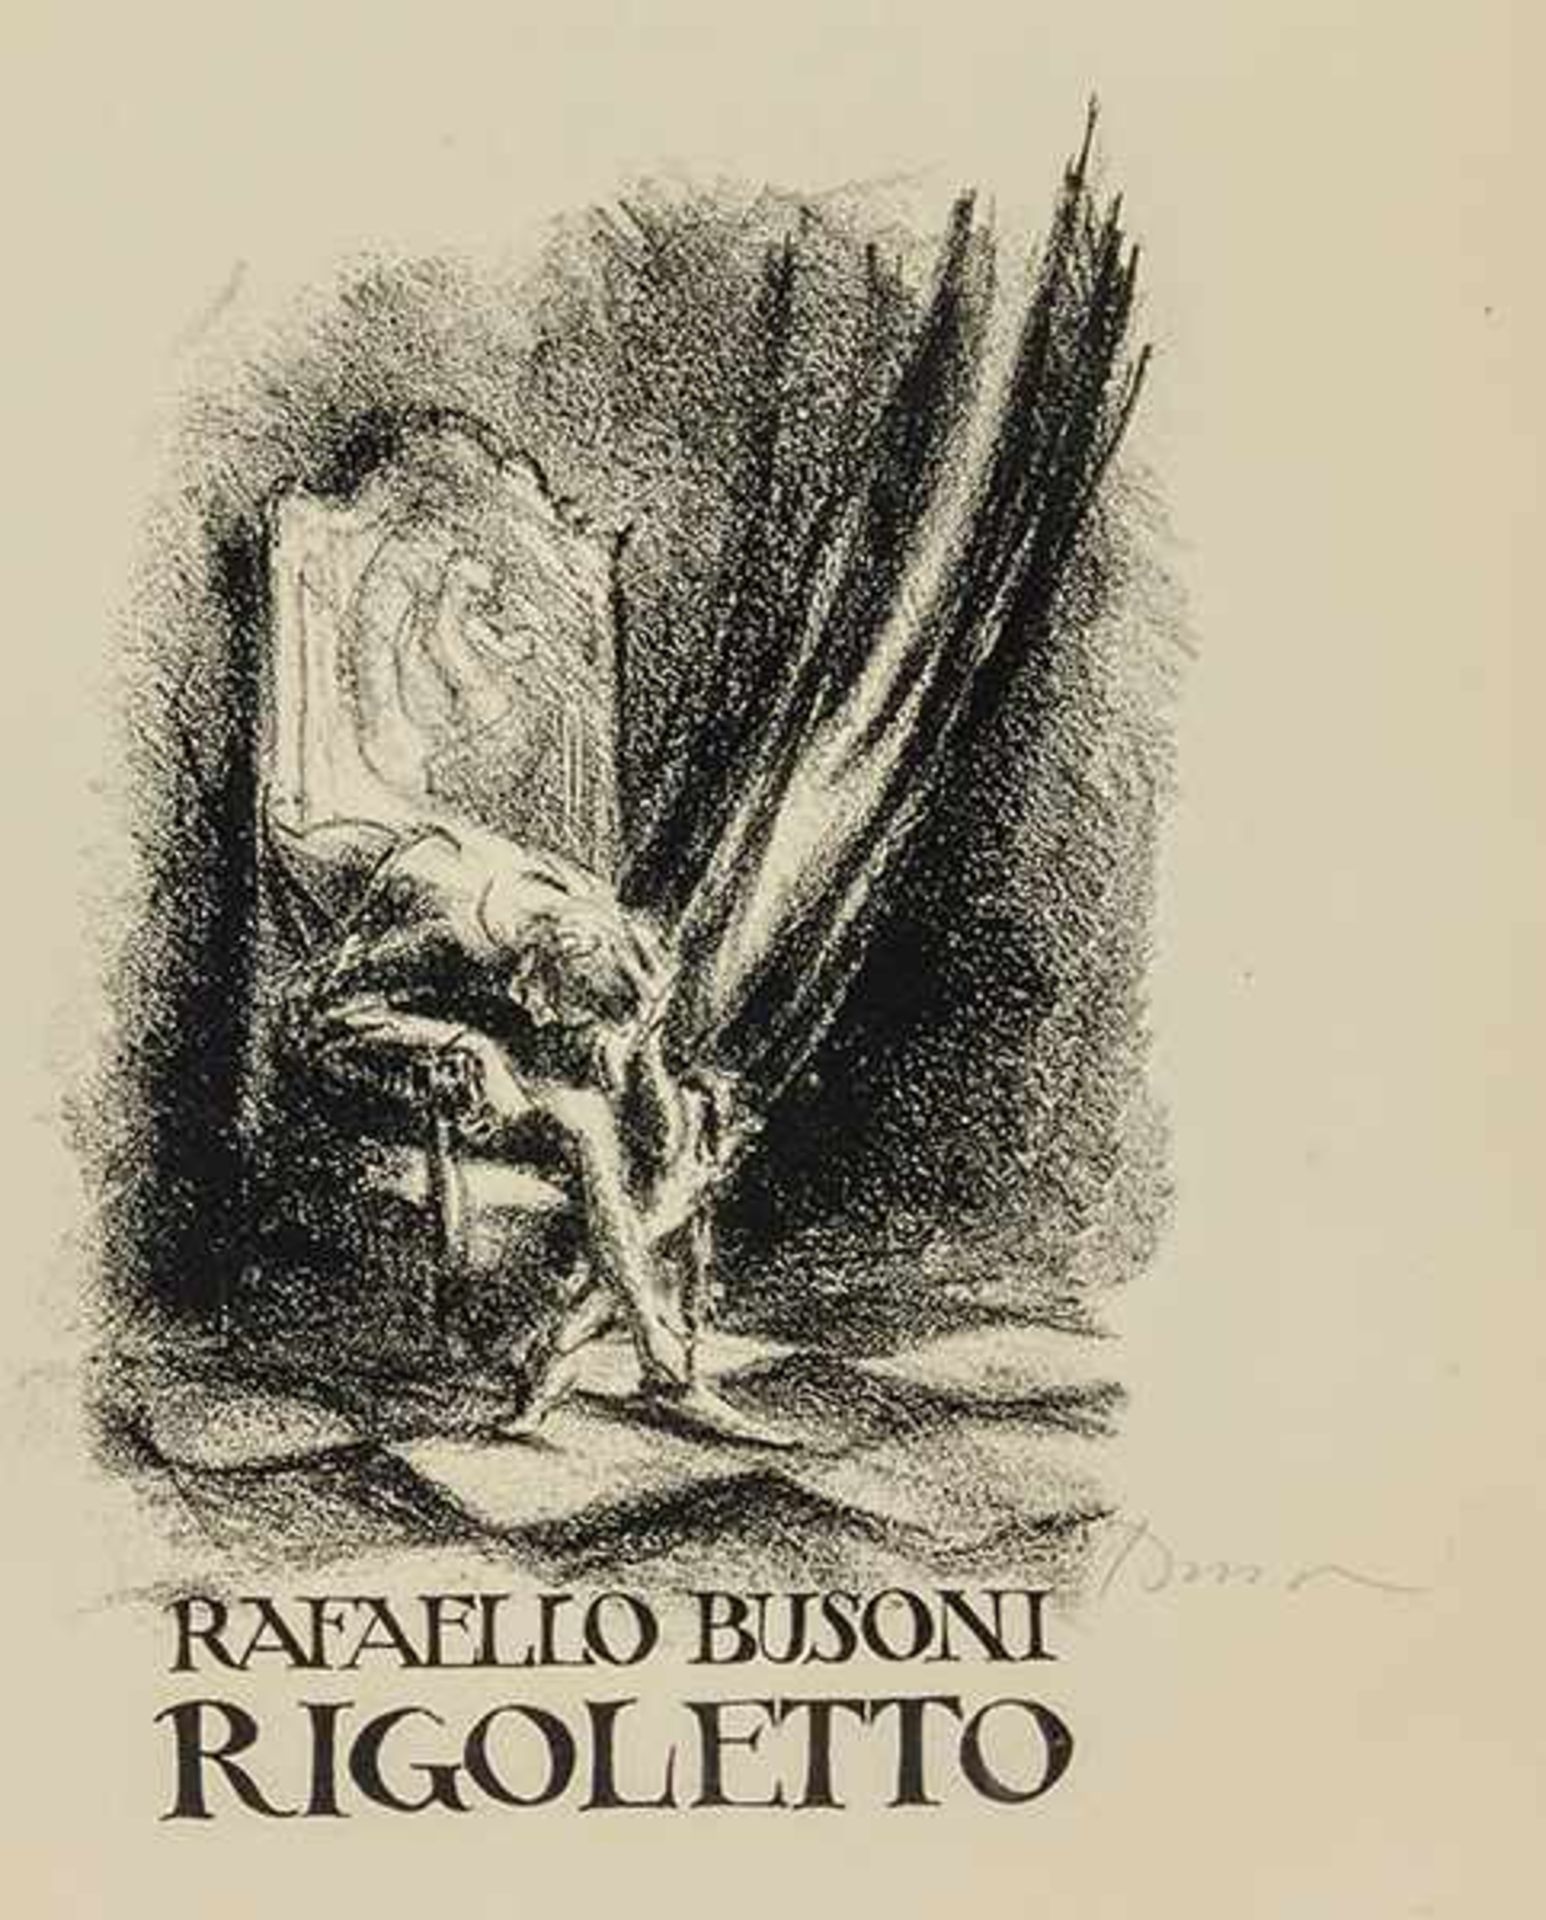 Busoni, Rafaello. Rigoletto. 12 lithografie per l'opera di G. Verdi, dedicte a Ferruccio Busoni.